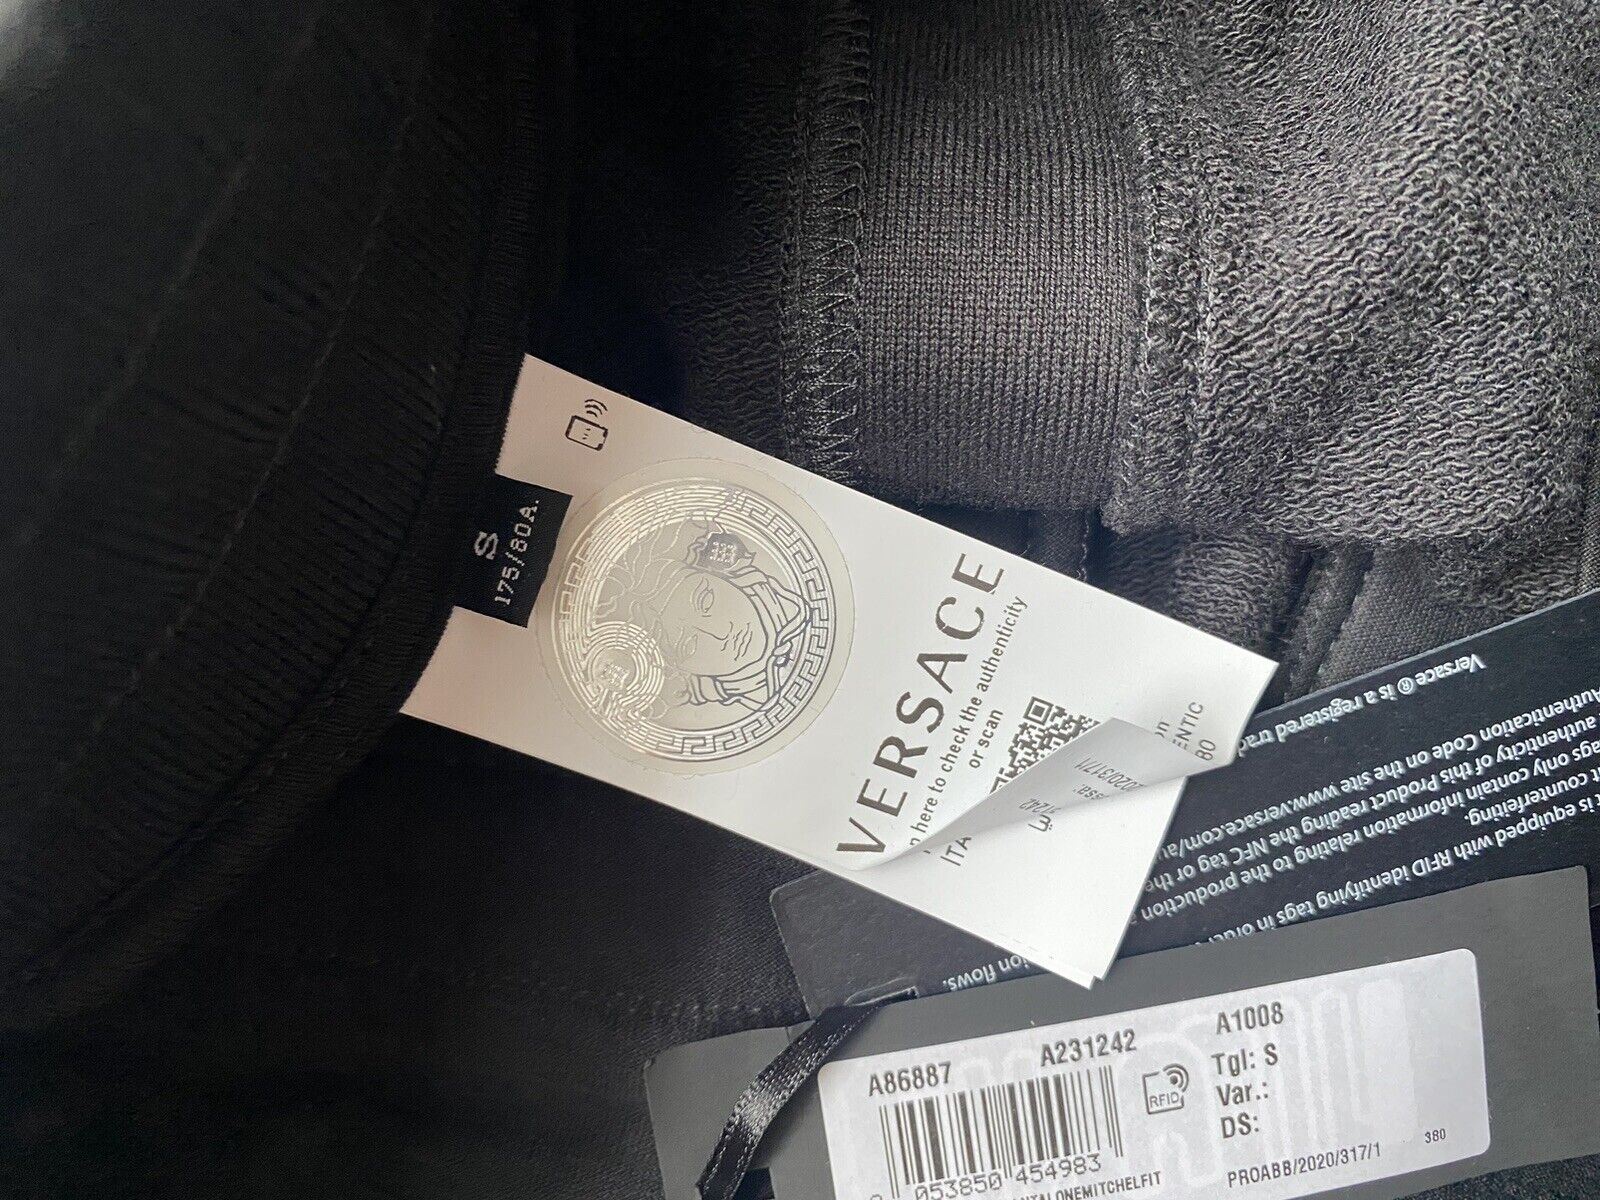 Neu mit Etikett: 850 $ Versace Schwarze Mitchel-Fit-Hose für Herren, Größe M, hergestellt in Italien A86887 